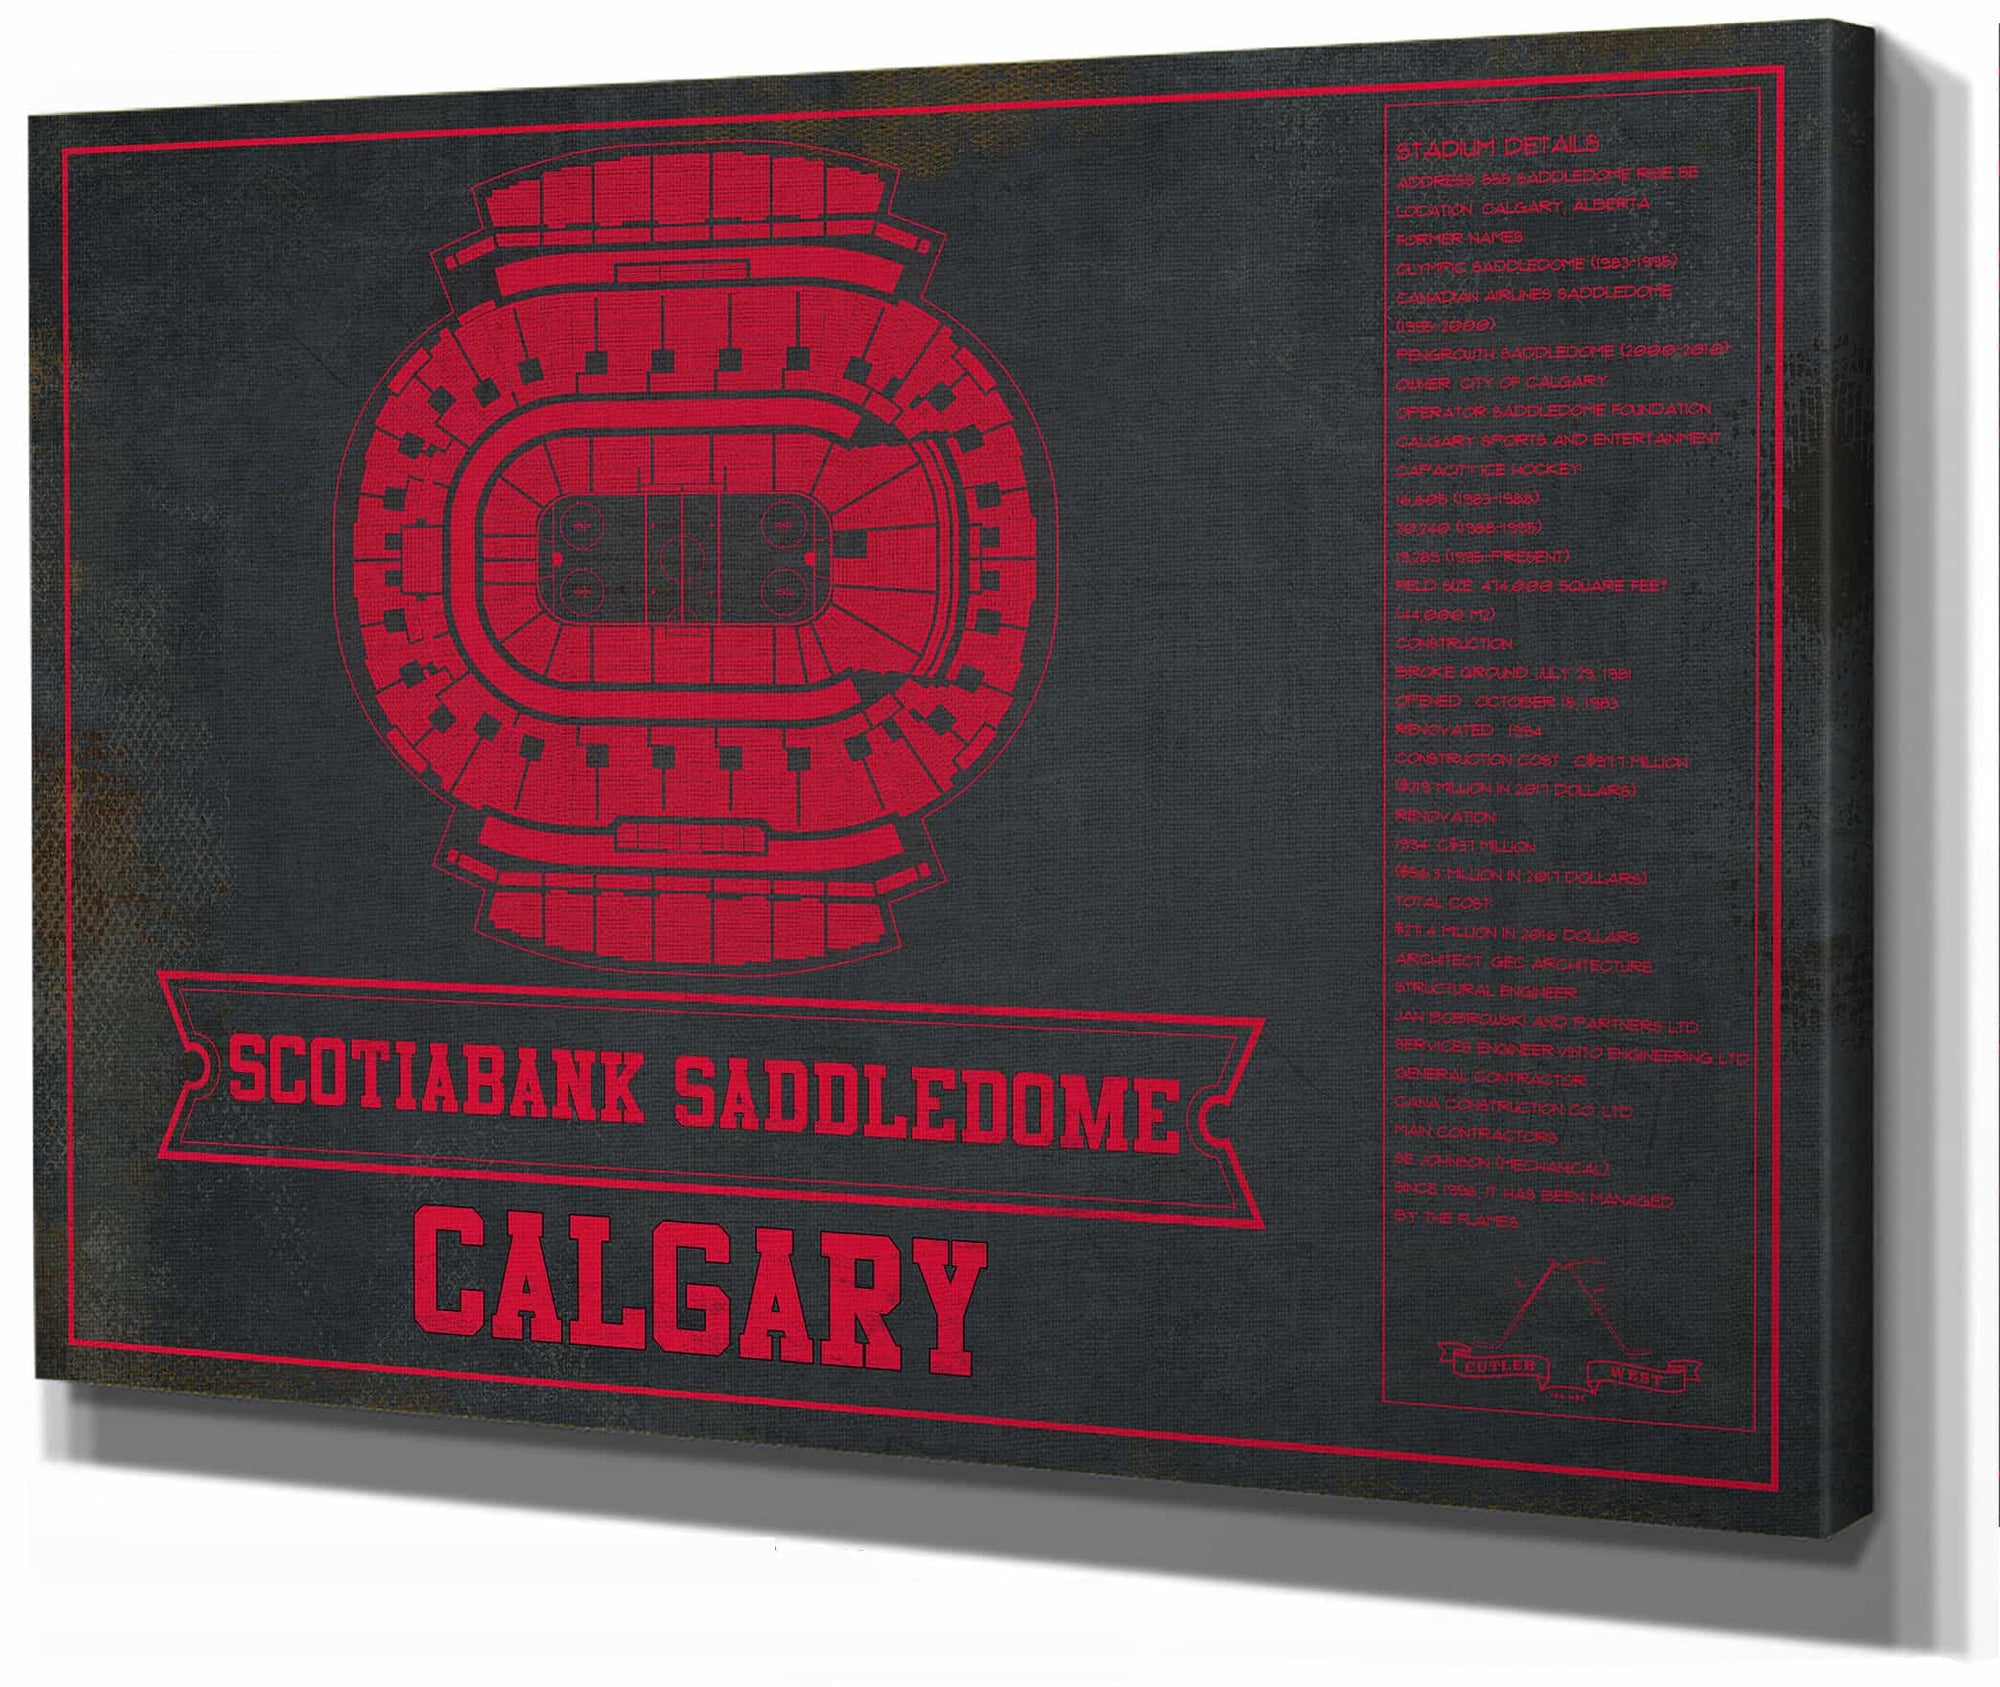 Calgary Flames Scotiabank Saddledome Seating Chart - Vintage Hockey Team Color Print